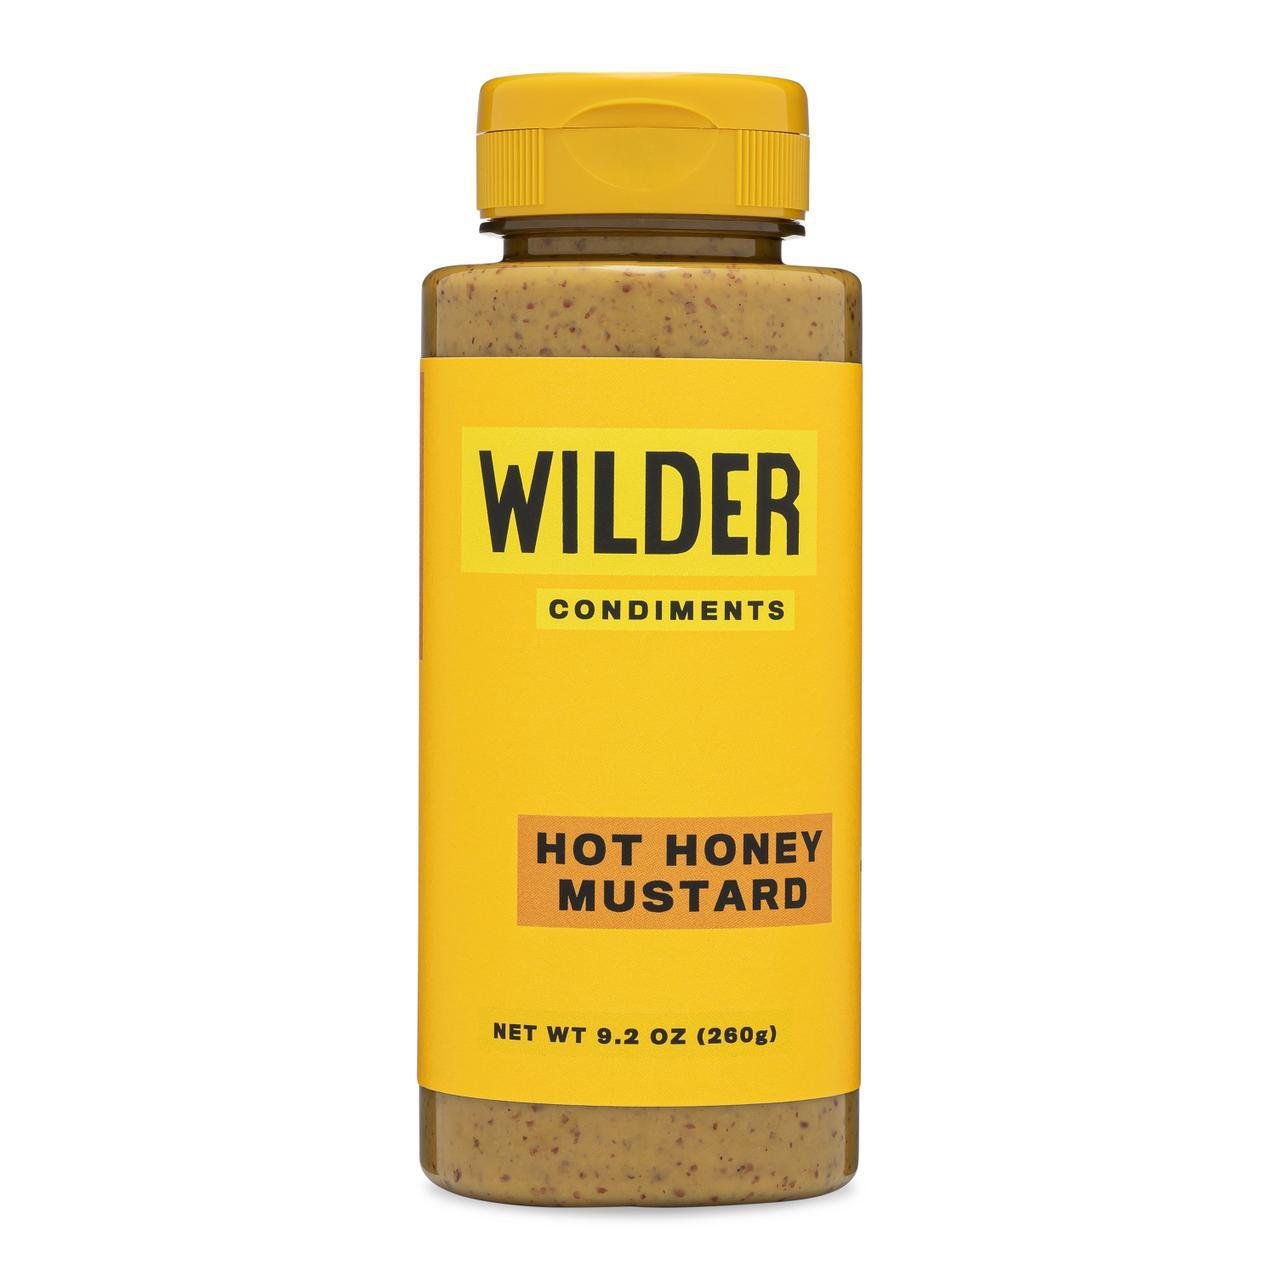 Wilder Condiments - 'Hot Honey' Mustard (9.2OZ) - The Epicurean Trader